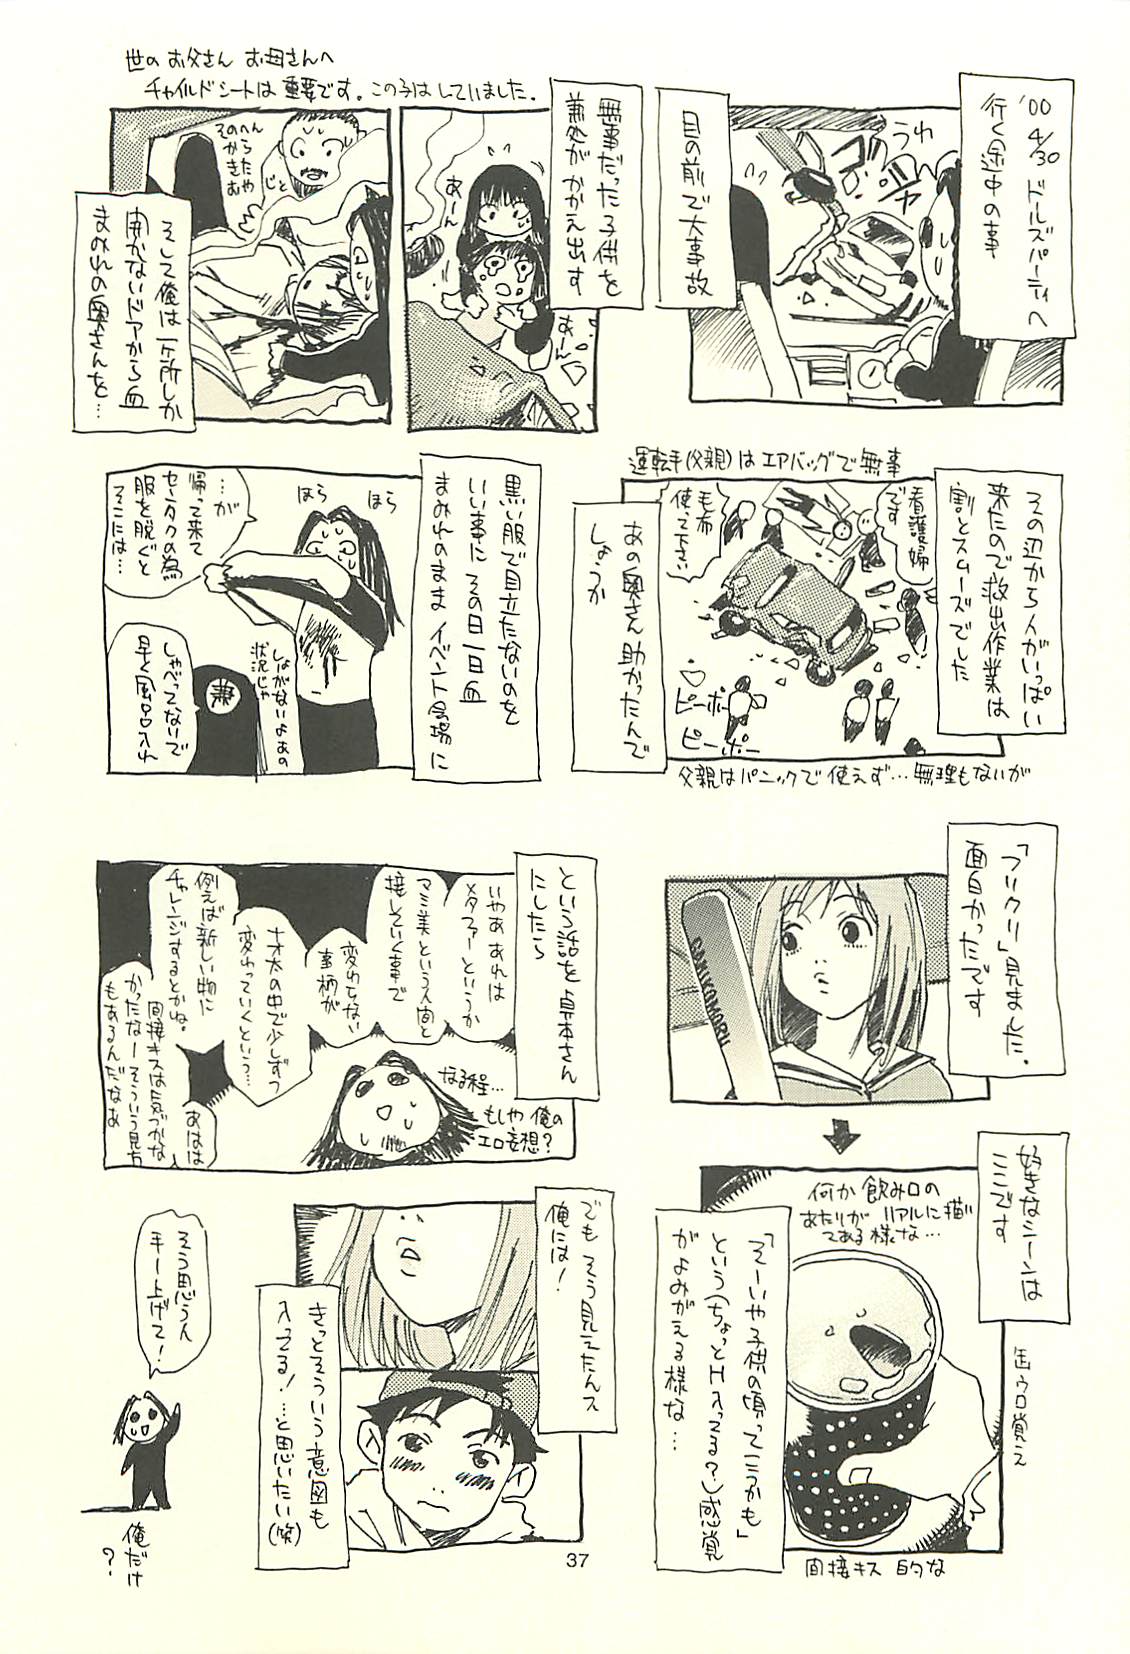 (C60) [NOUZUI MAJUTSU, NO-NO'S (Kawara Keisuke, Kanesada Keishi)] Nouzui Kawaraban Hinichijoutekina Nichijou I (C60) [脳髄魔術, NO-NO'S (瓦敬助, 兼処敬士)] 脳髄瓦版 非日常的な日常I